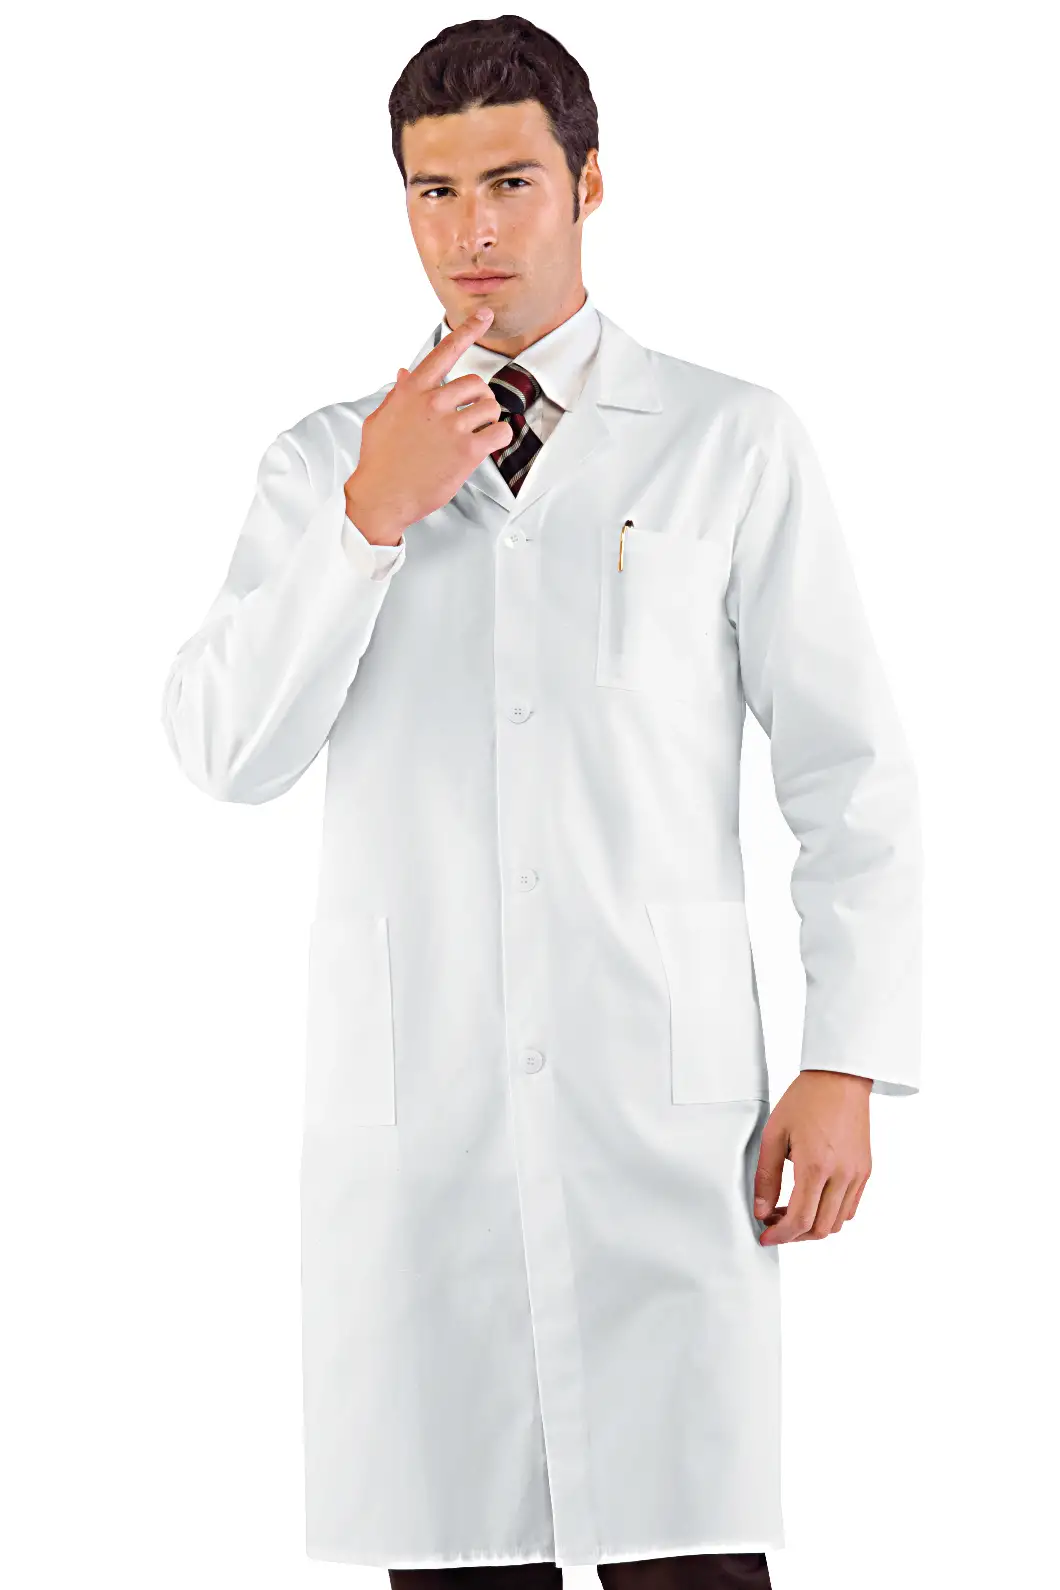 Camice da Medico Bianco in Cotone Personalizzato - Isacco